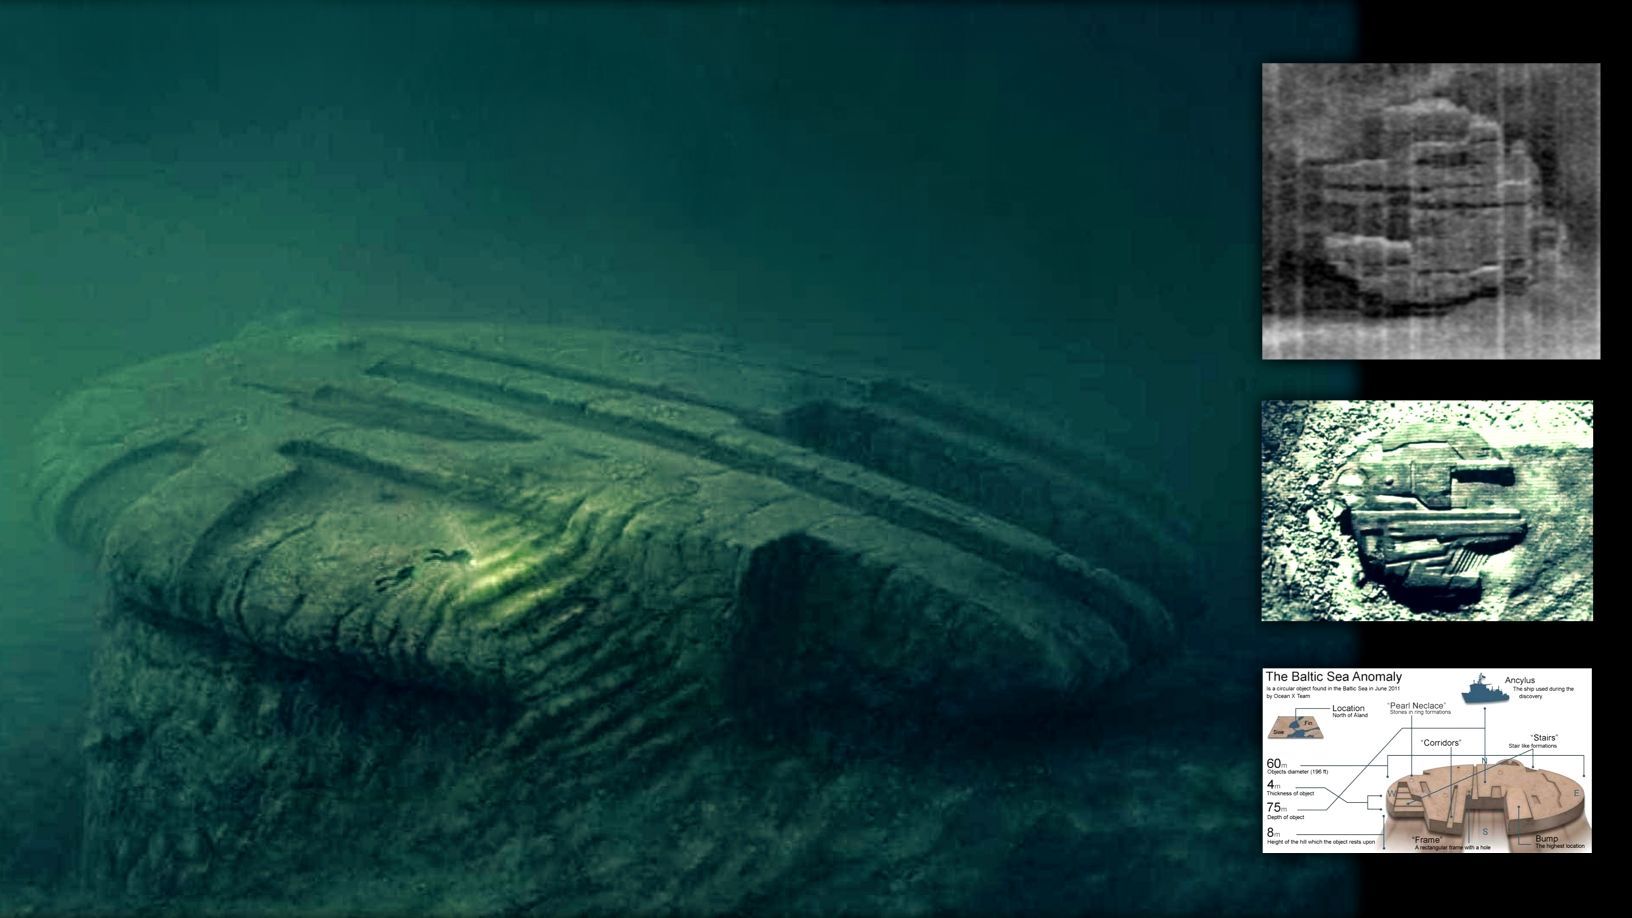 ბალტიის ზღვის ანომალია: ჩაძირული უცხოპლანეტელები ან სხვა ხუმრობა! 1